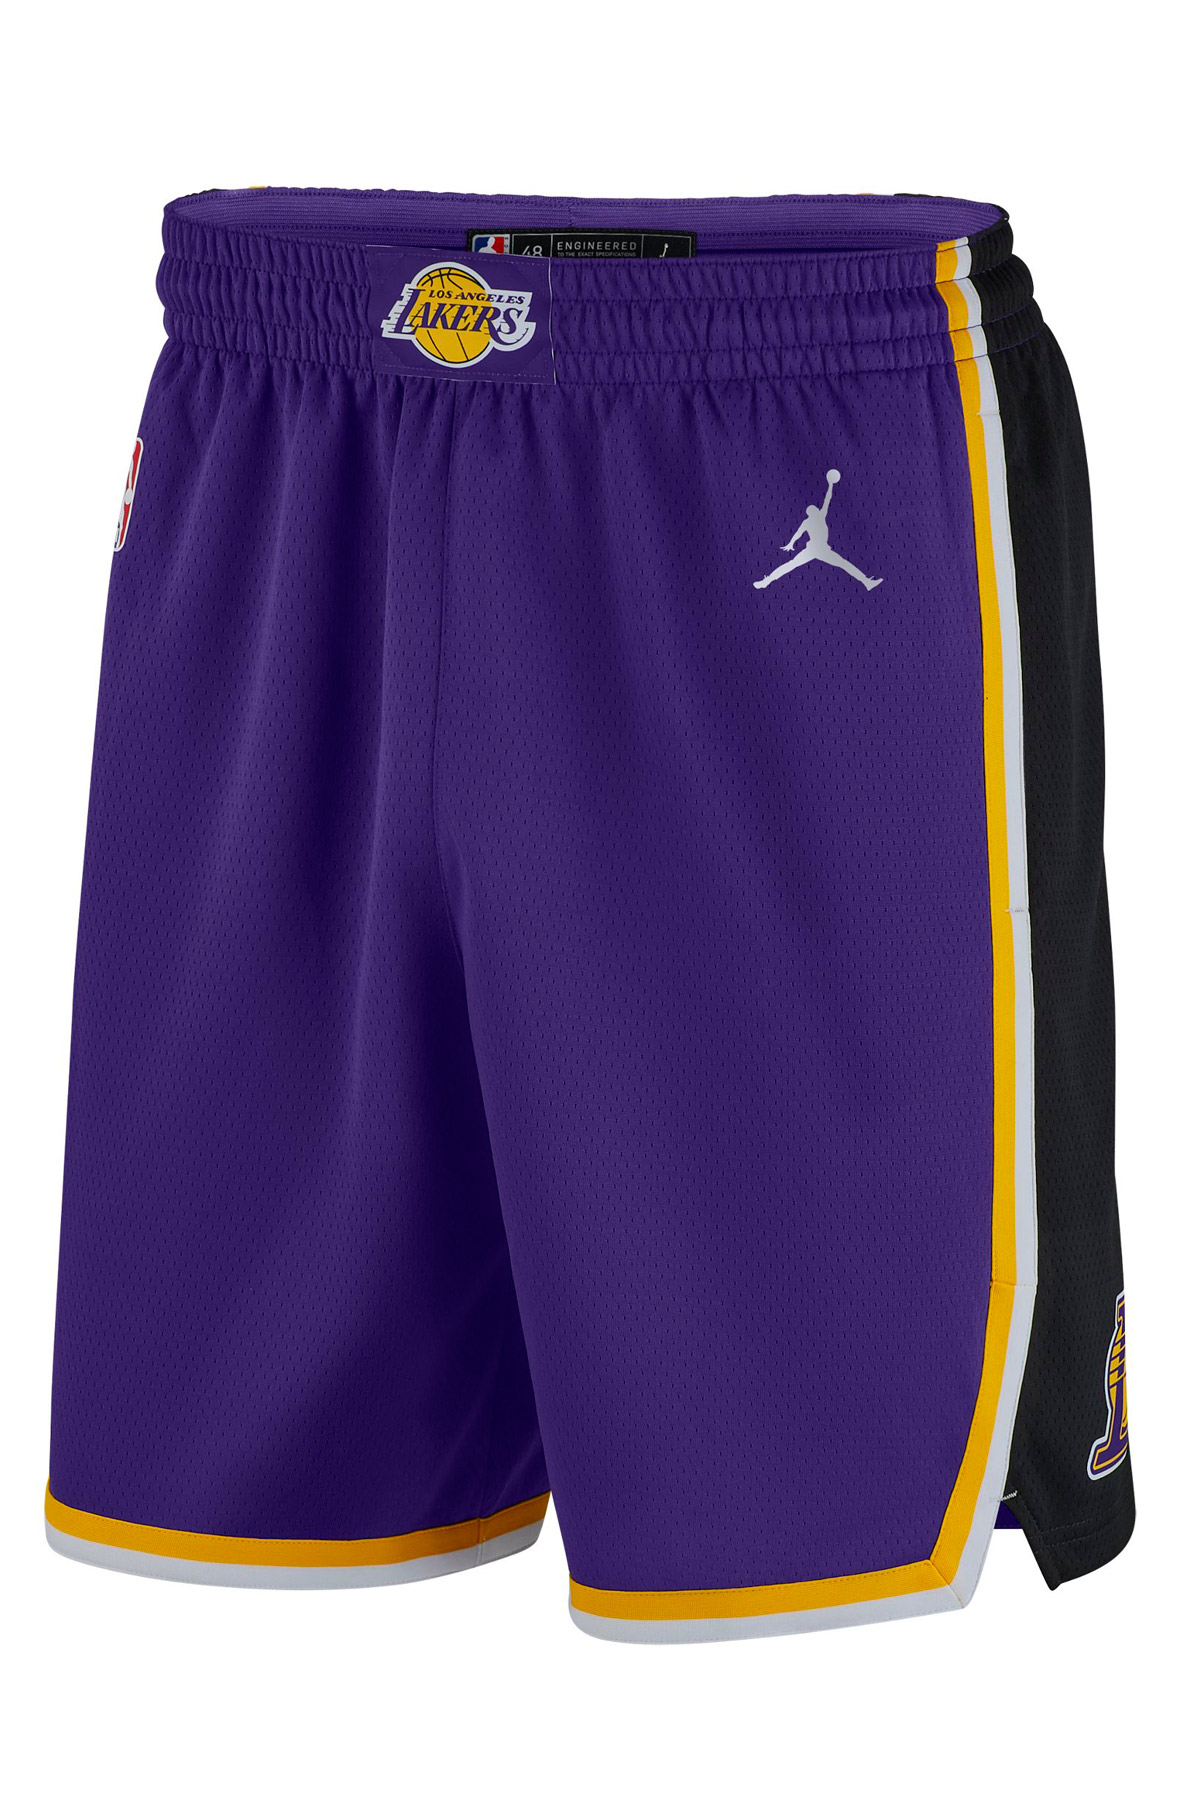 Men's Nike Los Angeles Lakers NBA Swingman Basketball Shorts - White/Field  Purple/Field Purple